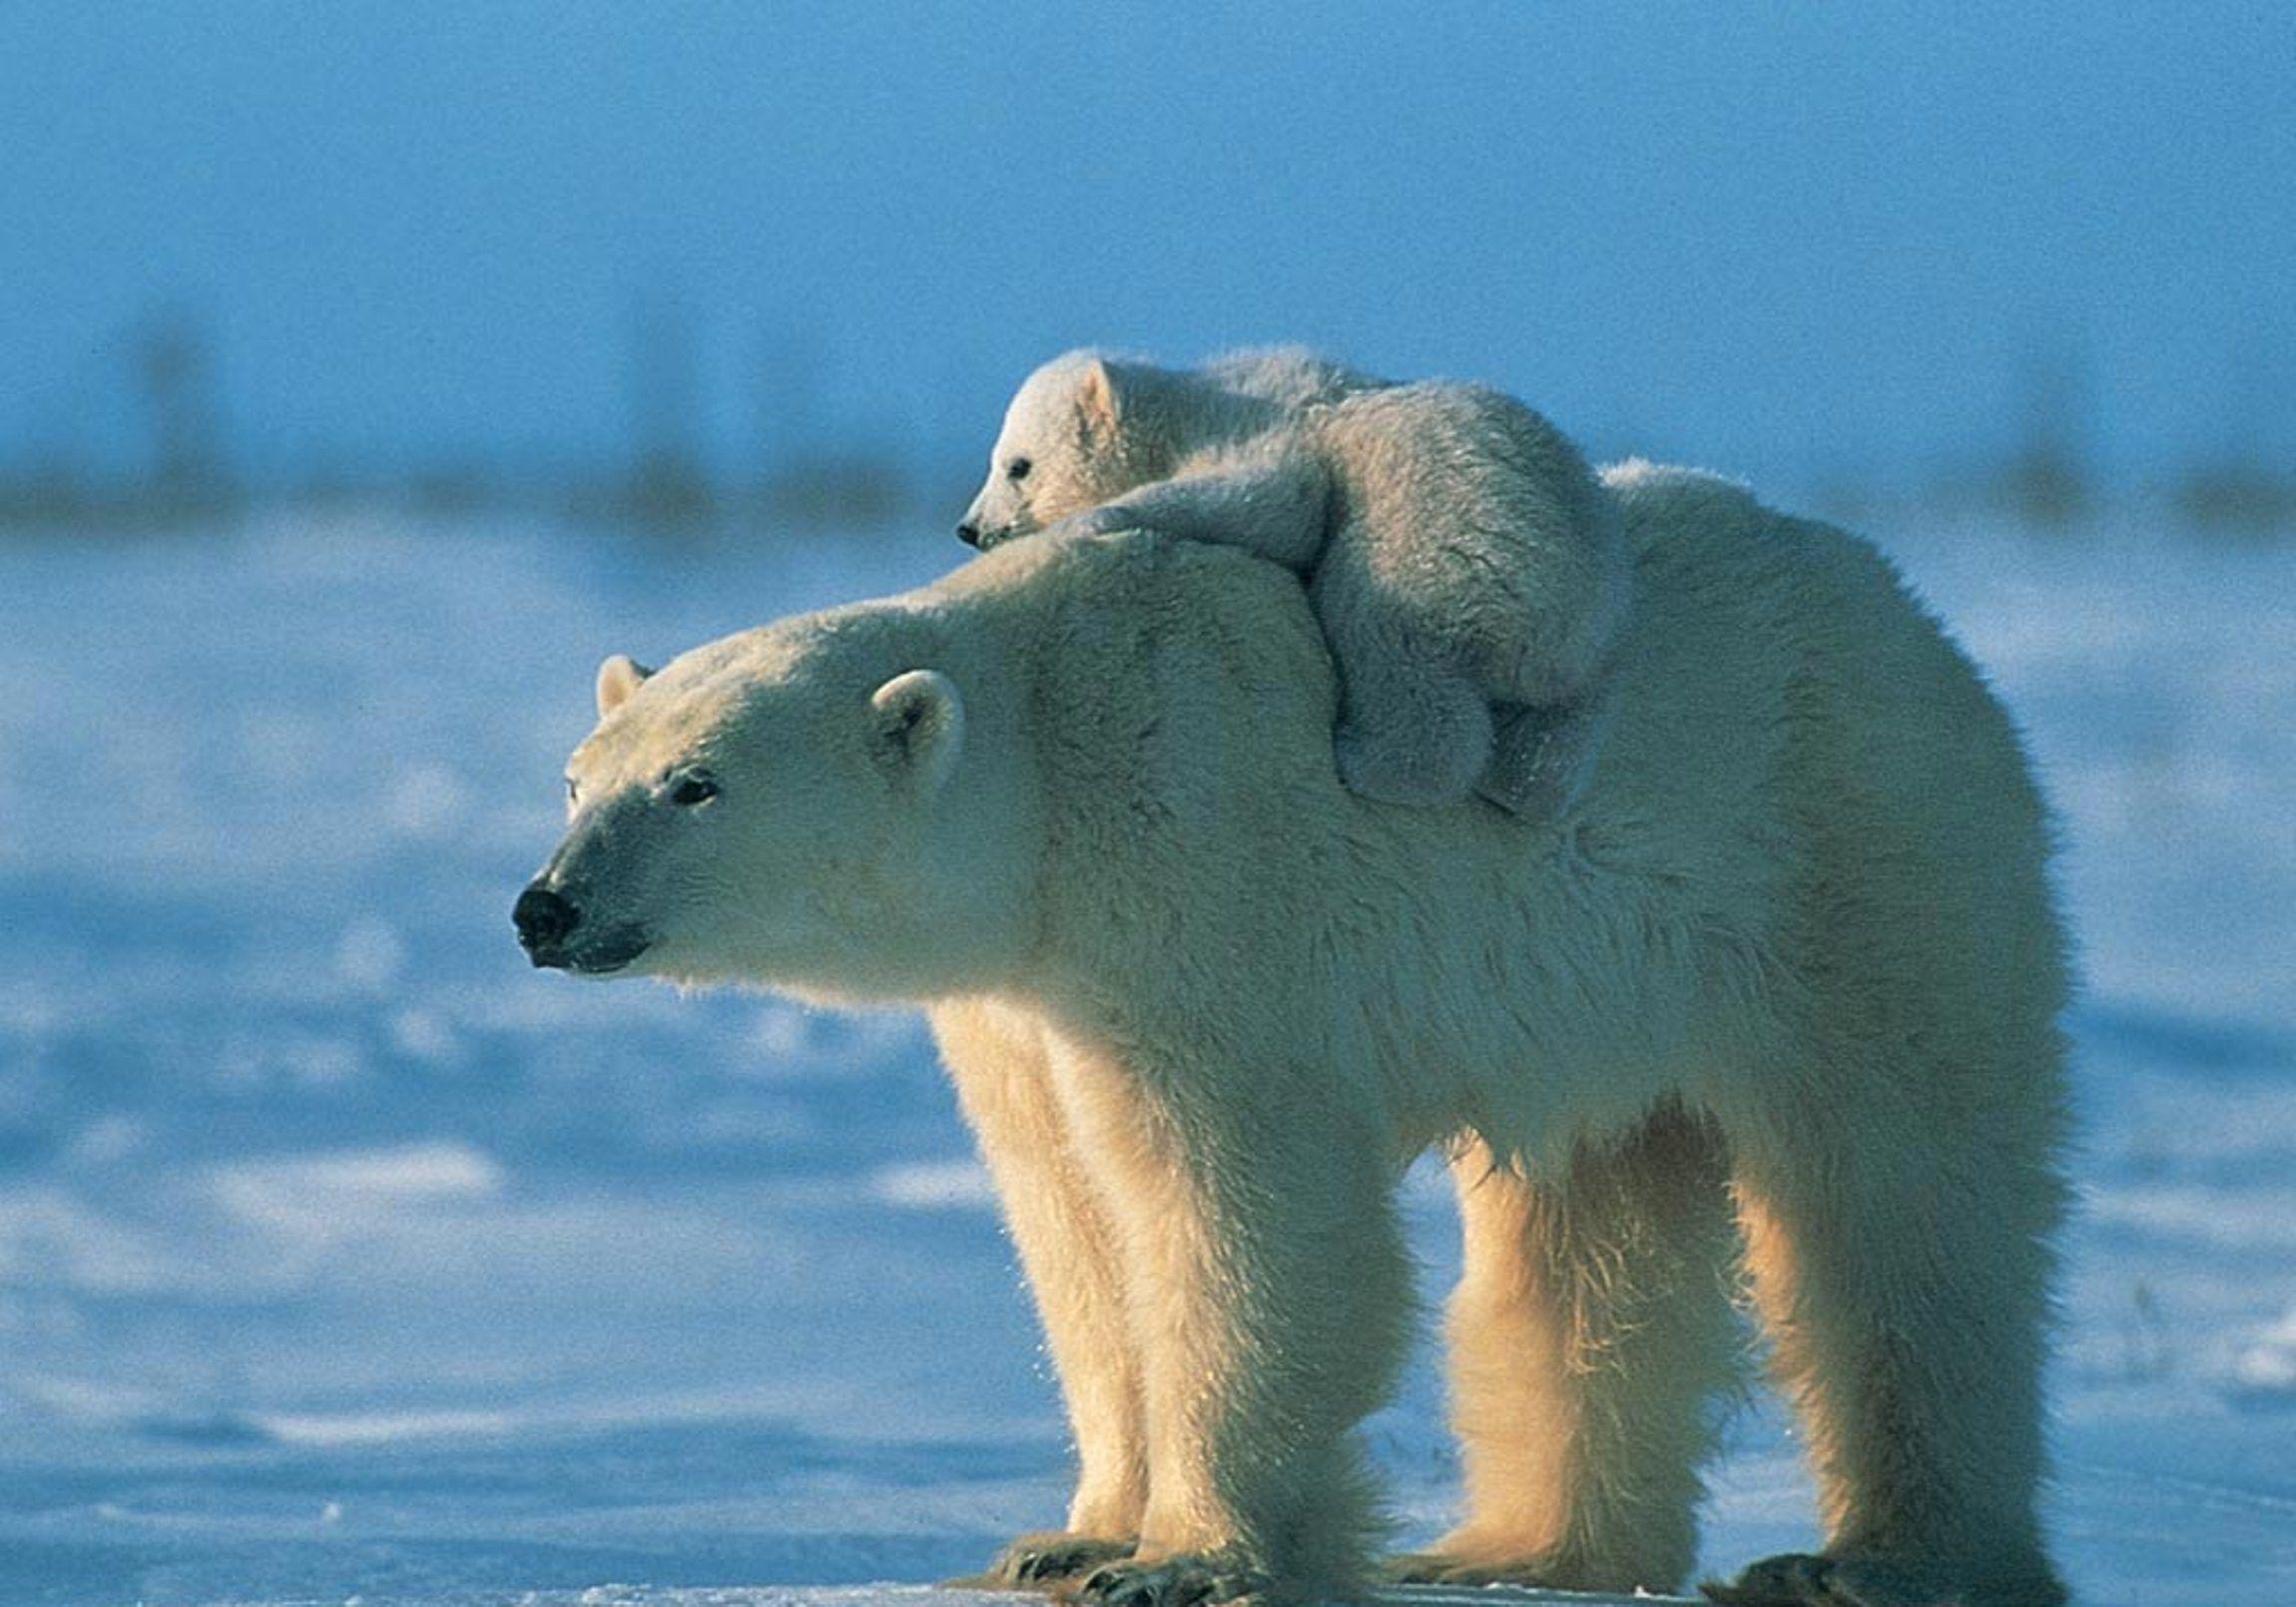 عکس استوک چشم نواز خرس قطبی بچه روی دوش مادر با کیفیت عالی